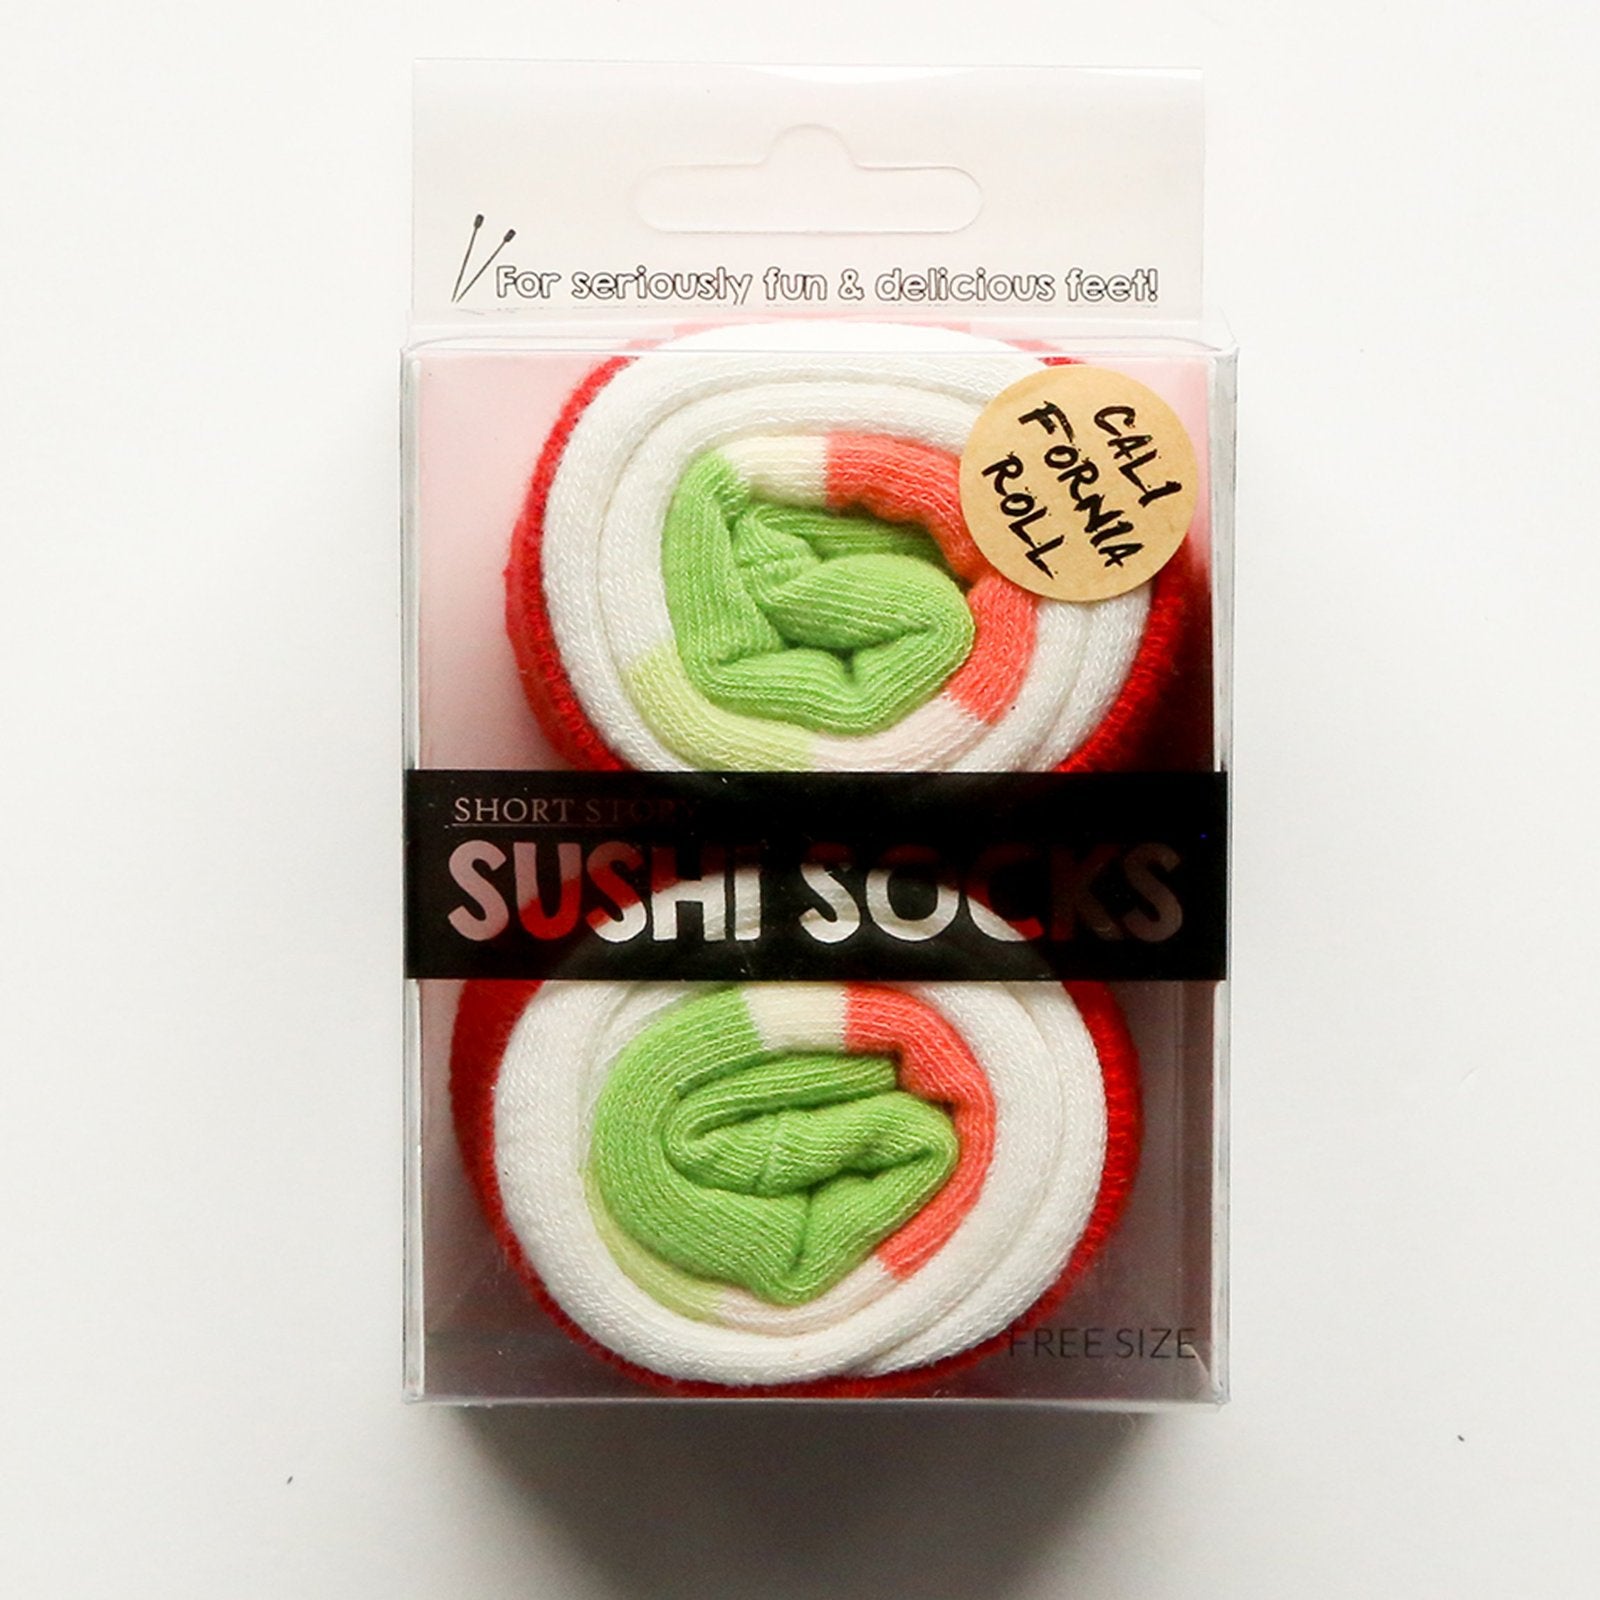 Sushi Socks California Roll